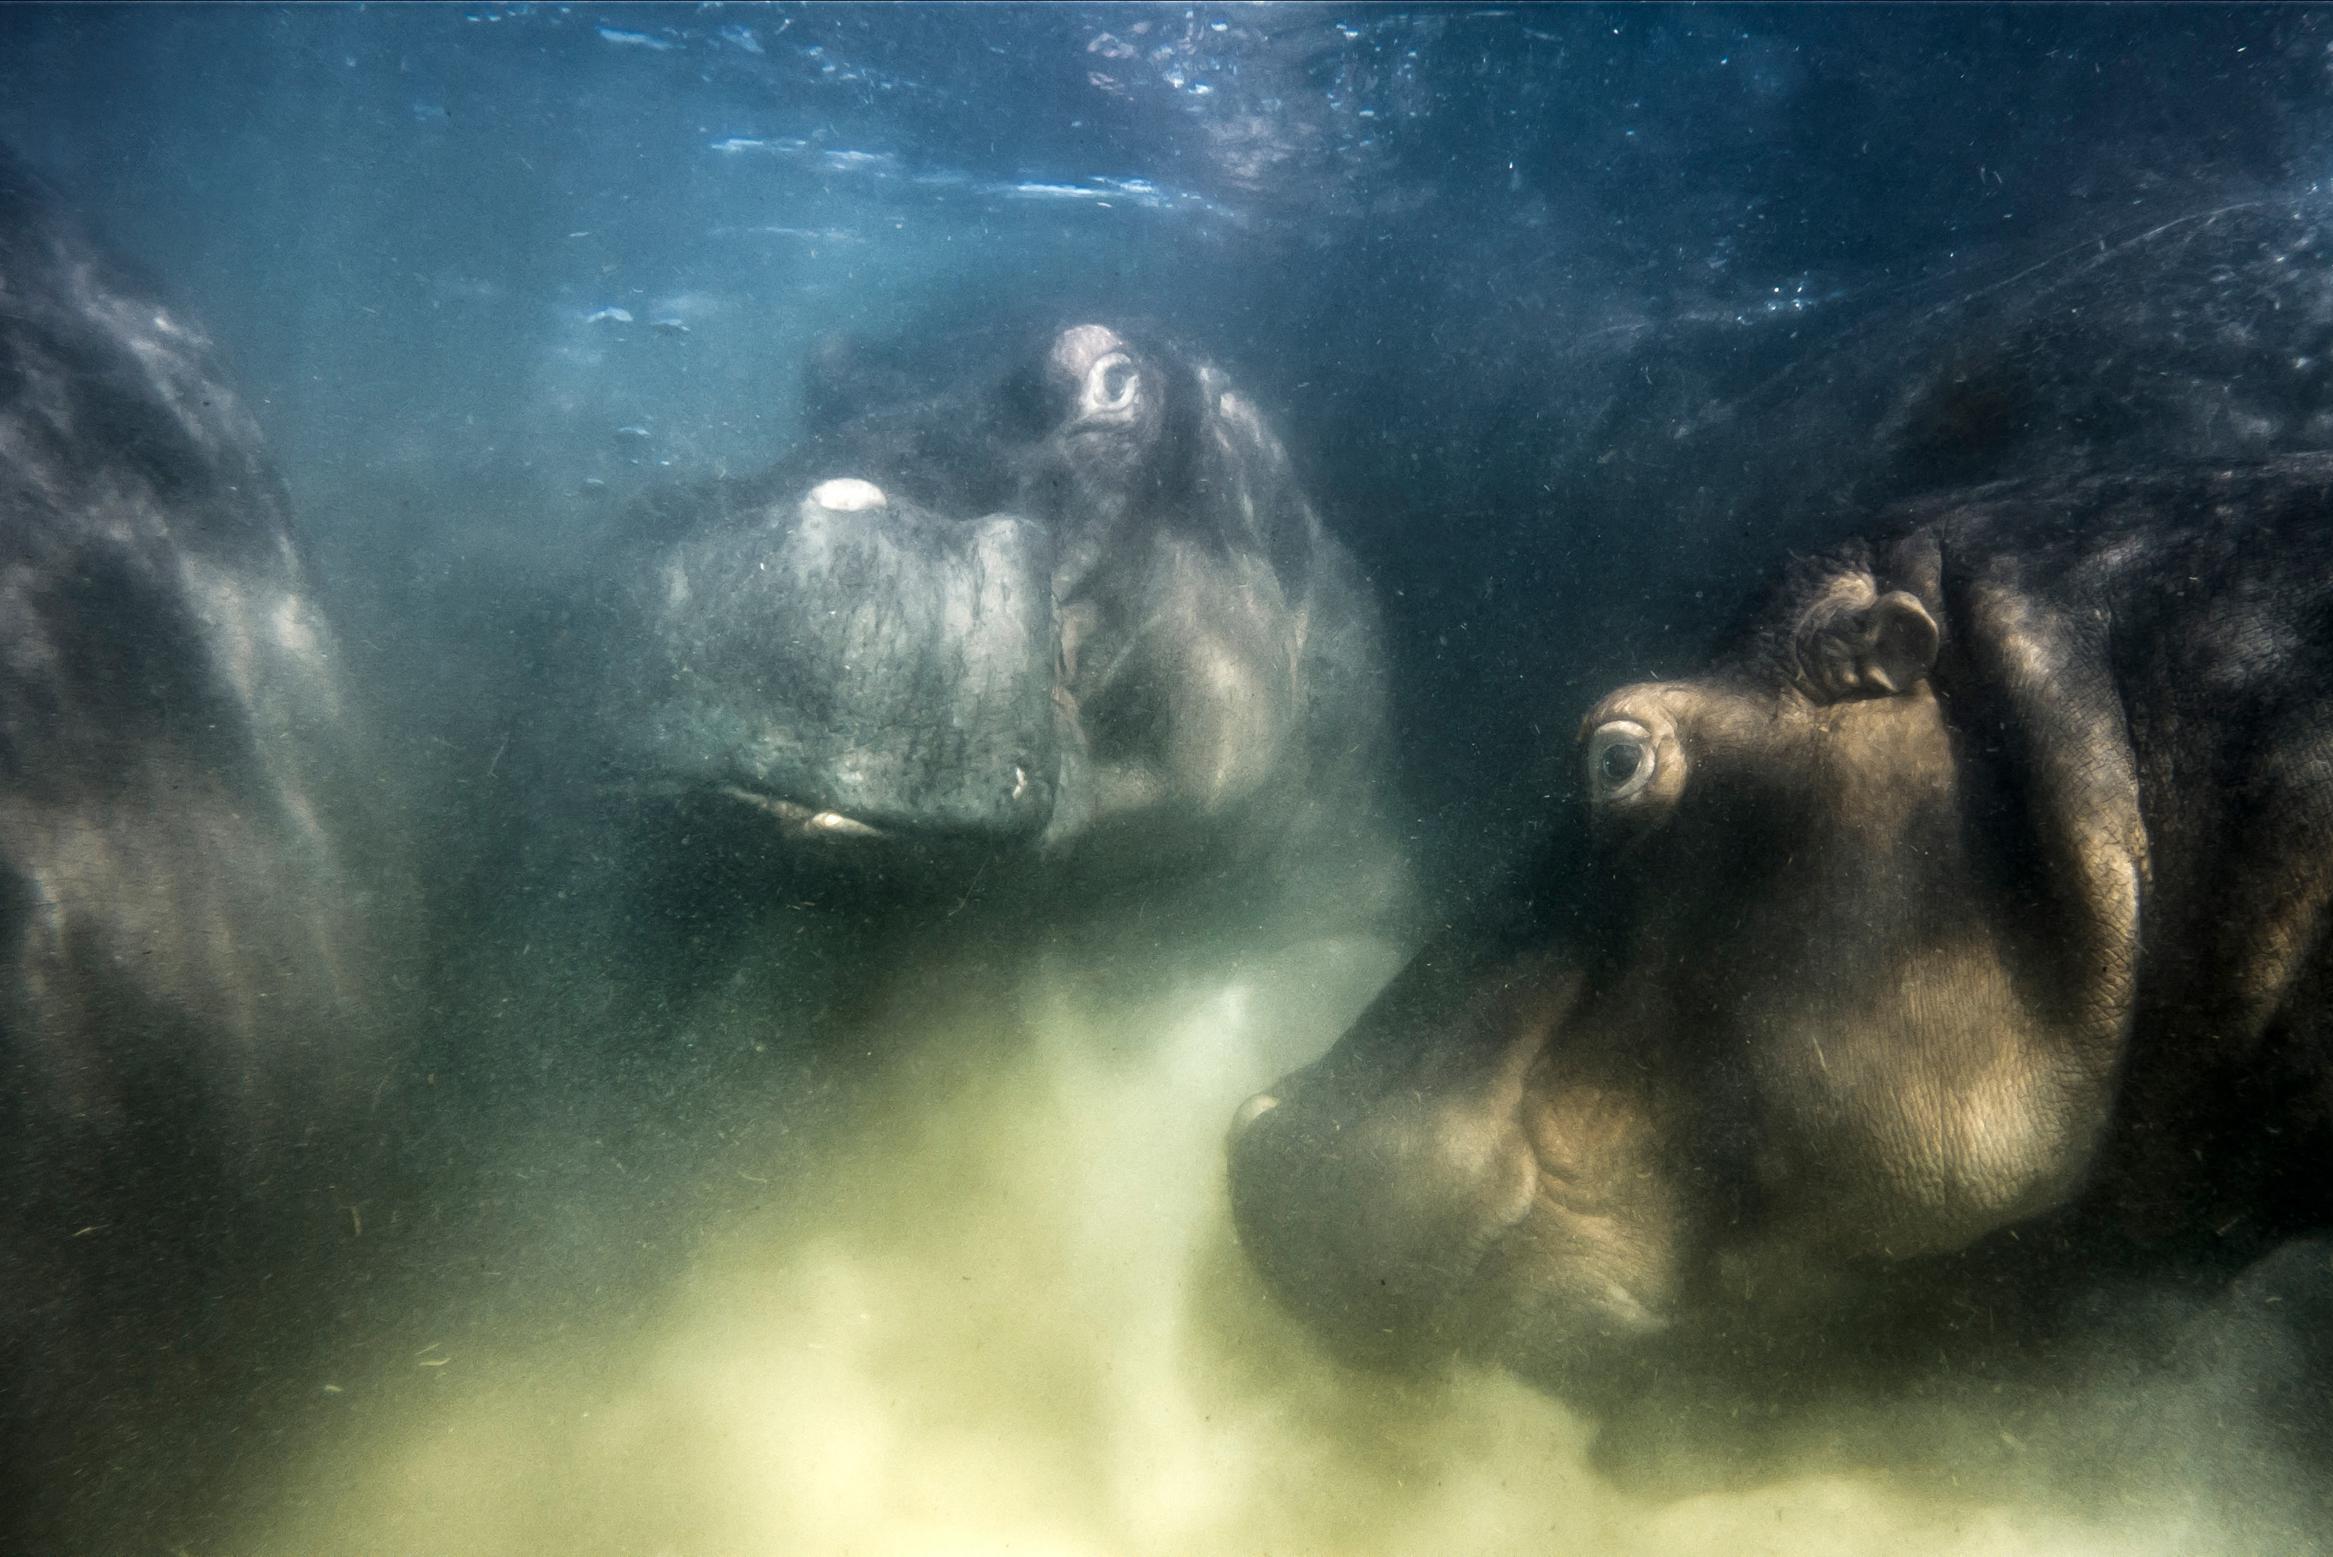 Il russo vince il premio European Wildlife Photographer of the Year con le sue foto di ippopotami subacquei